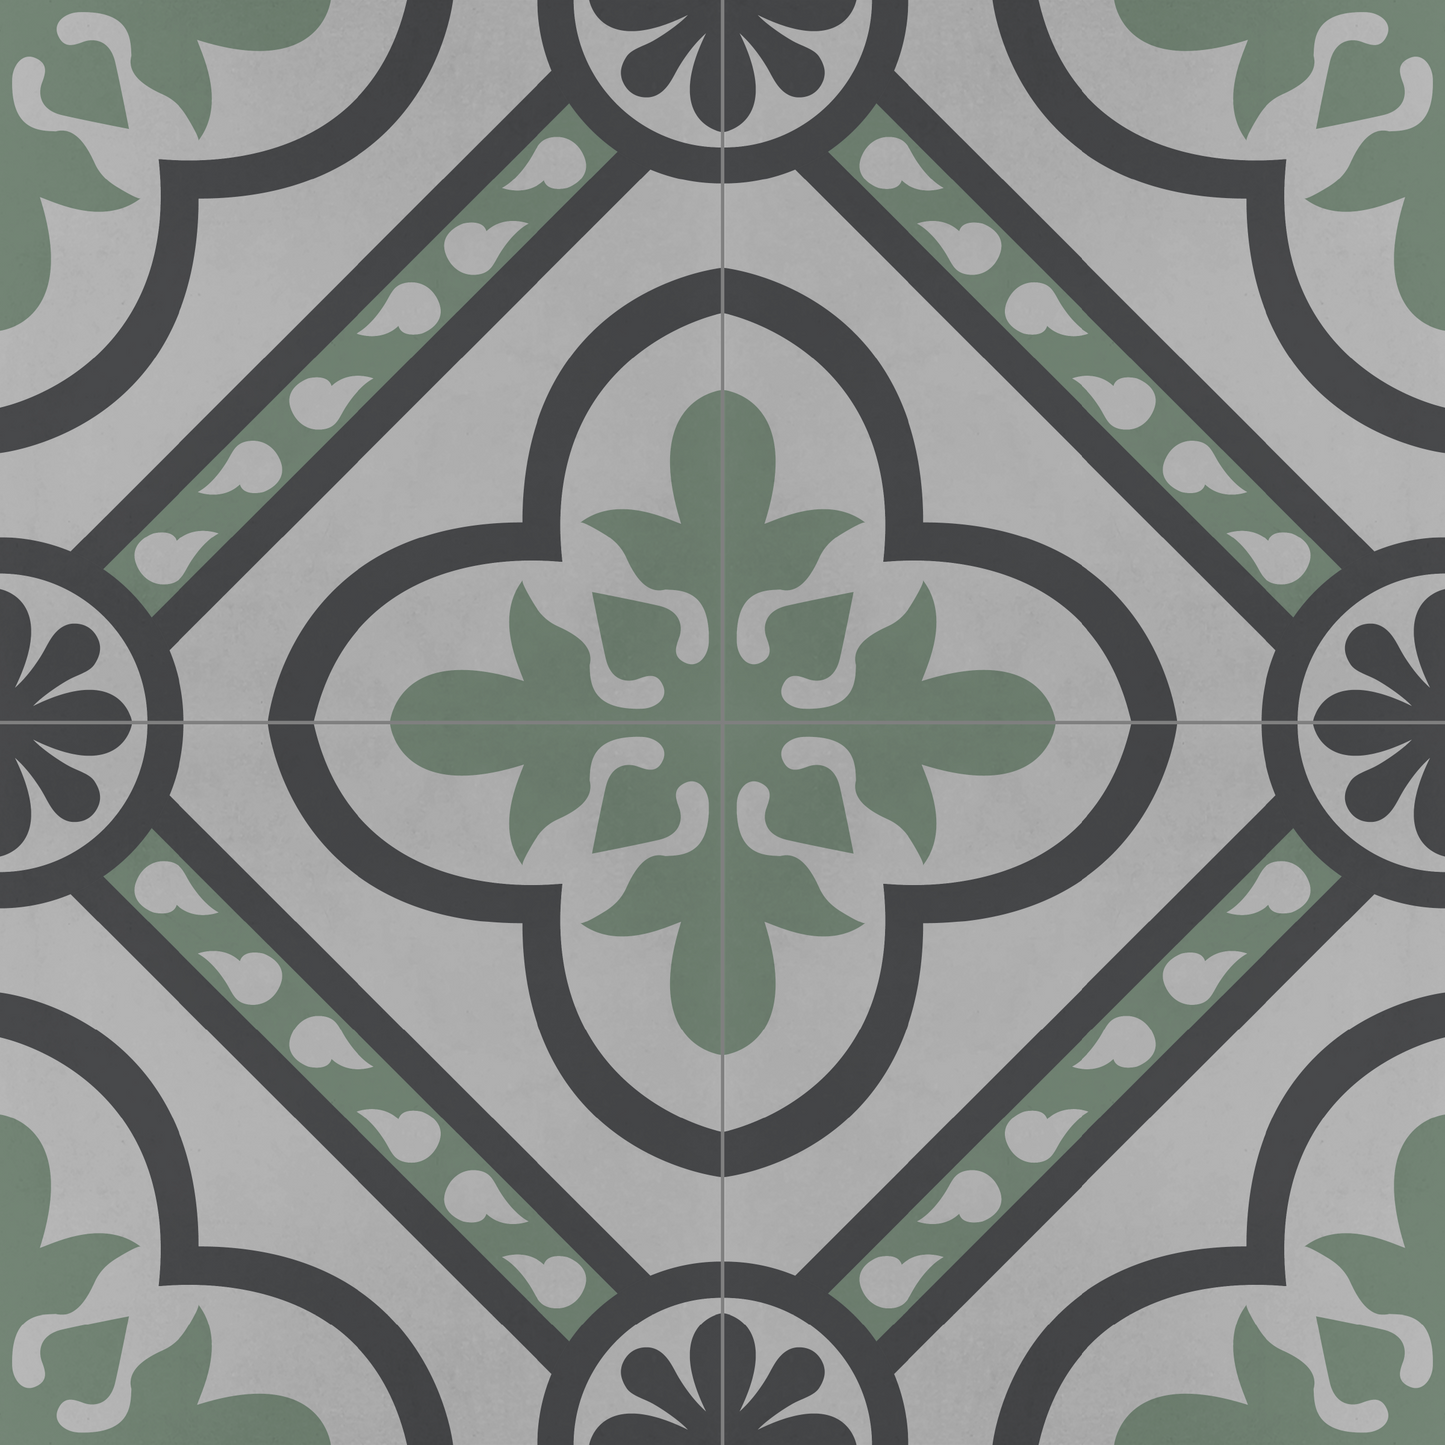 Encaustic Cement Tile, Concrete Tile, Traditional Floral , Pattern Tiles